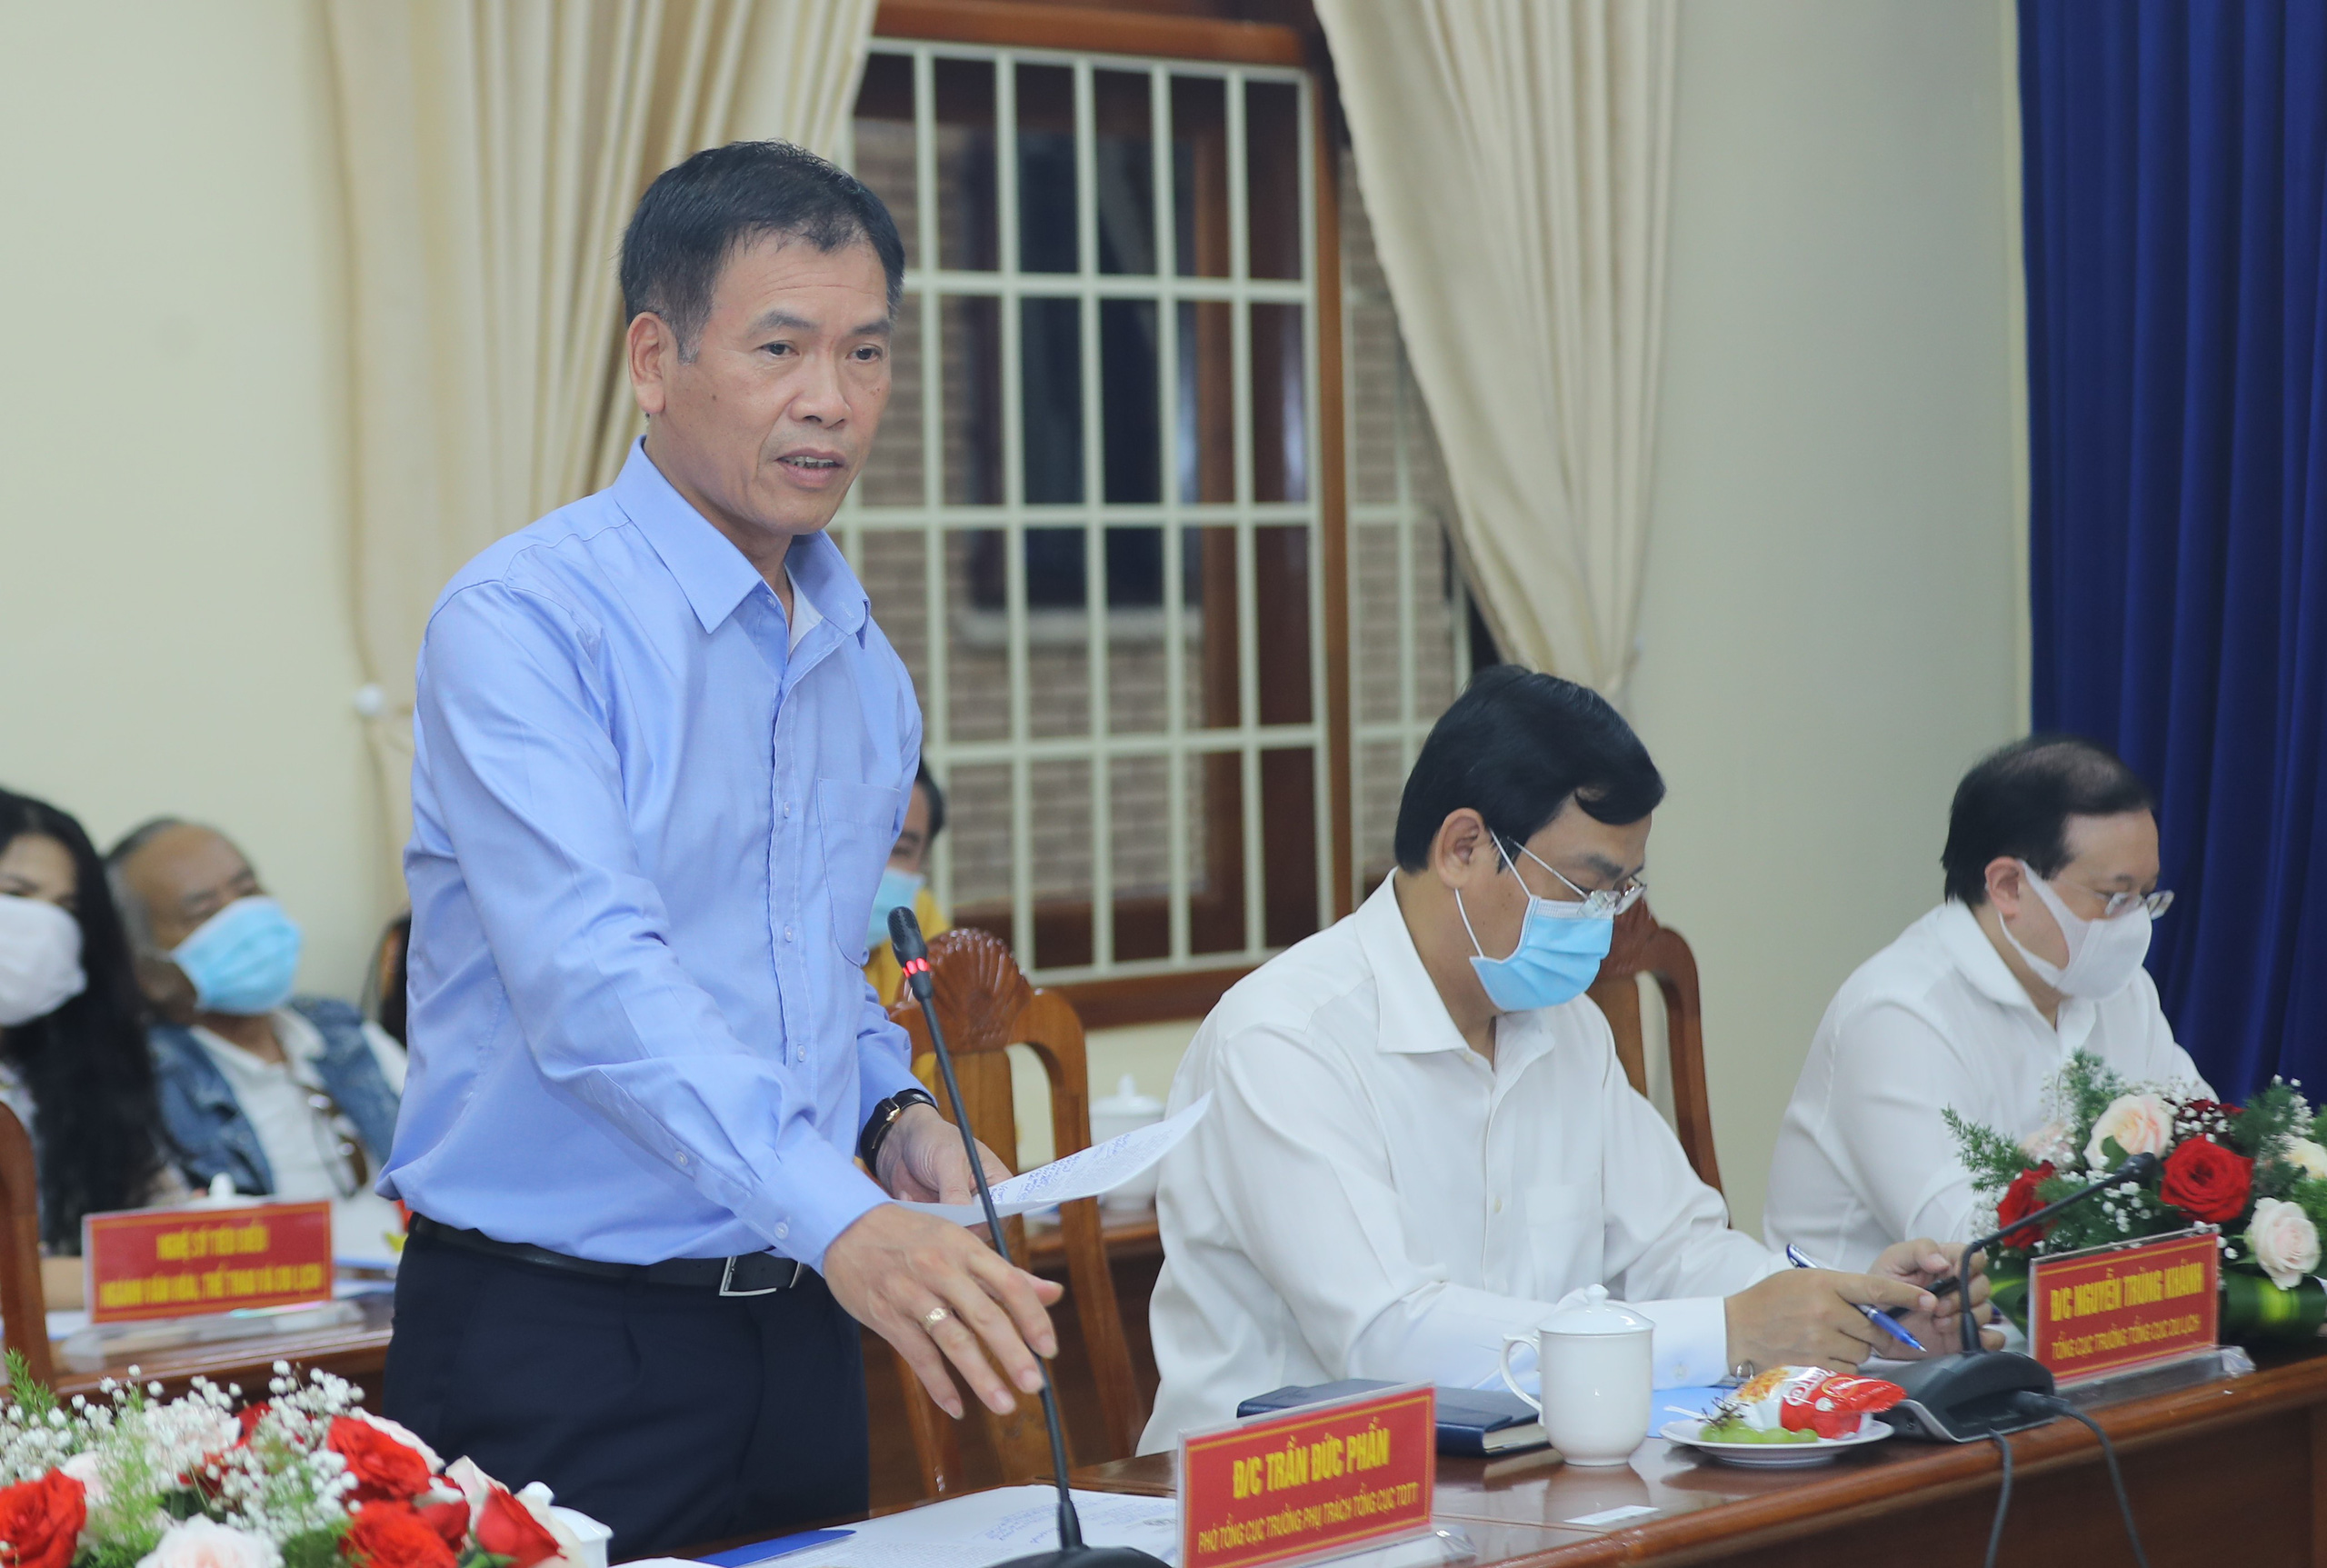 Bộ trưởng Nguyễn Văn Hùng: “Kon Tum có quang cảnh đẹp, sao không mạnh dạn đặt ước mơ trở thành trung tâm hội nghị của khu vực miền Trung-Tây Nguyên” - Ảnh 6.